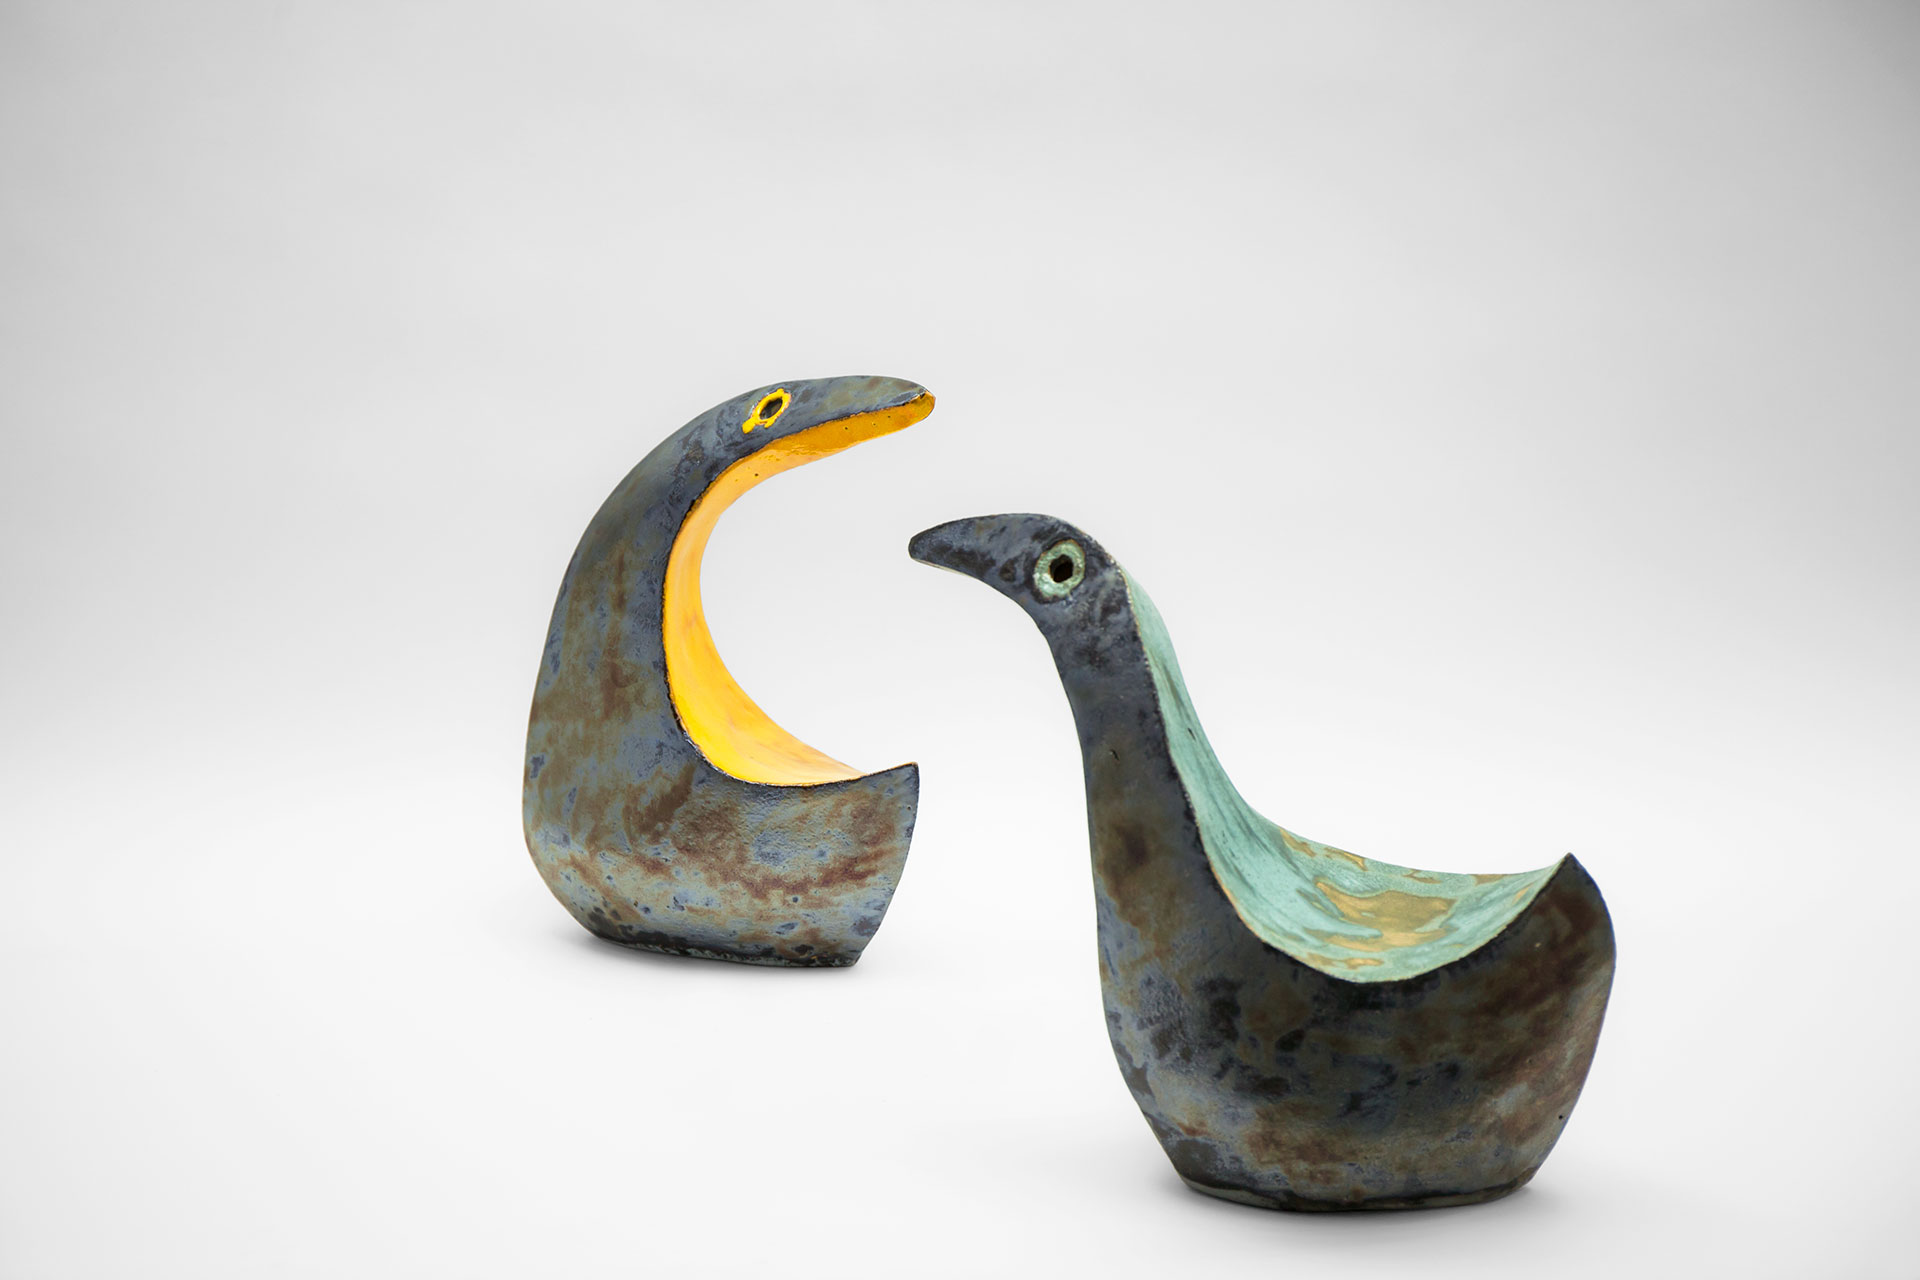 Ceramic art bird sculptures inspired by modern minimalist design